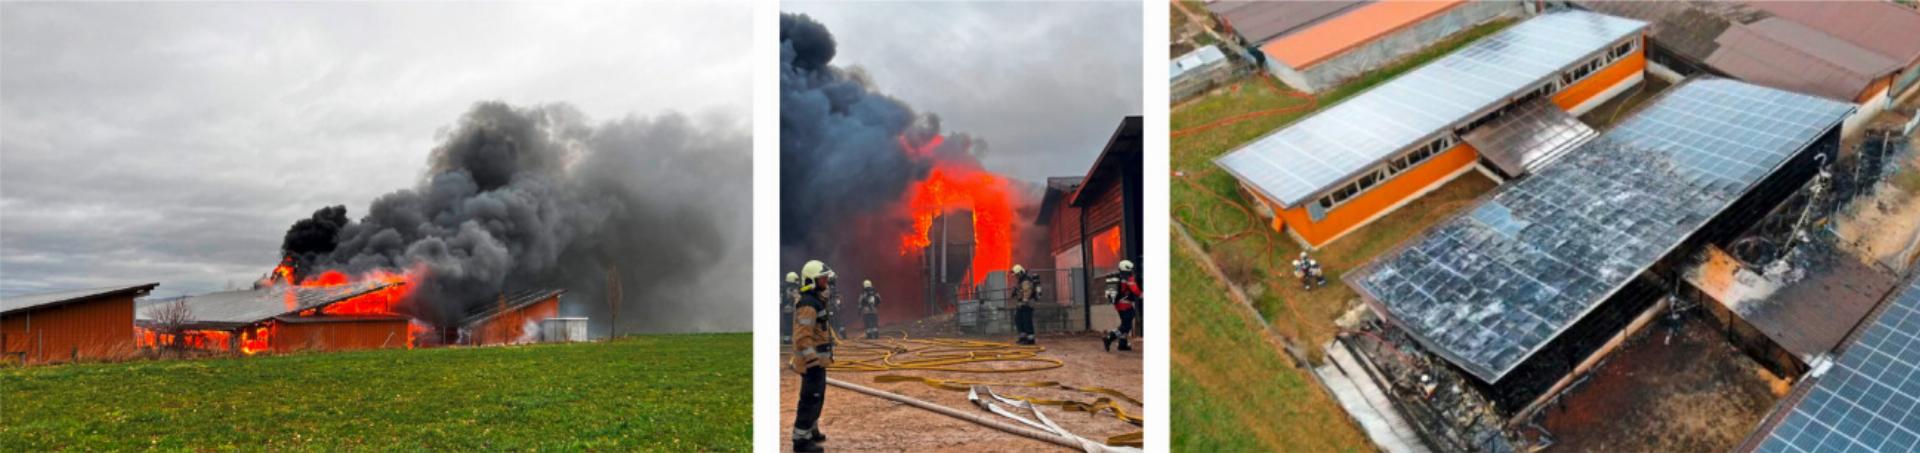 Mehrere Schweine konnten von den Feuerwehrleuten nicht mehr gerettet werden. Der dreiteilige Schweinestall mit den Solaranlagen (Bild rechts) wurde vom Brand am stärksten zerstört. Bild zvg/Polizei BL